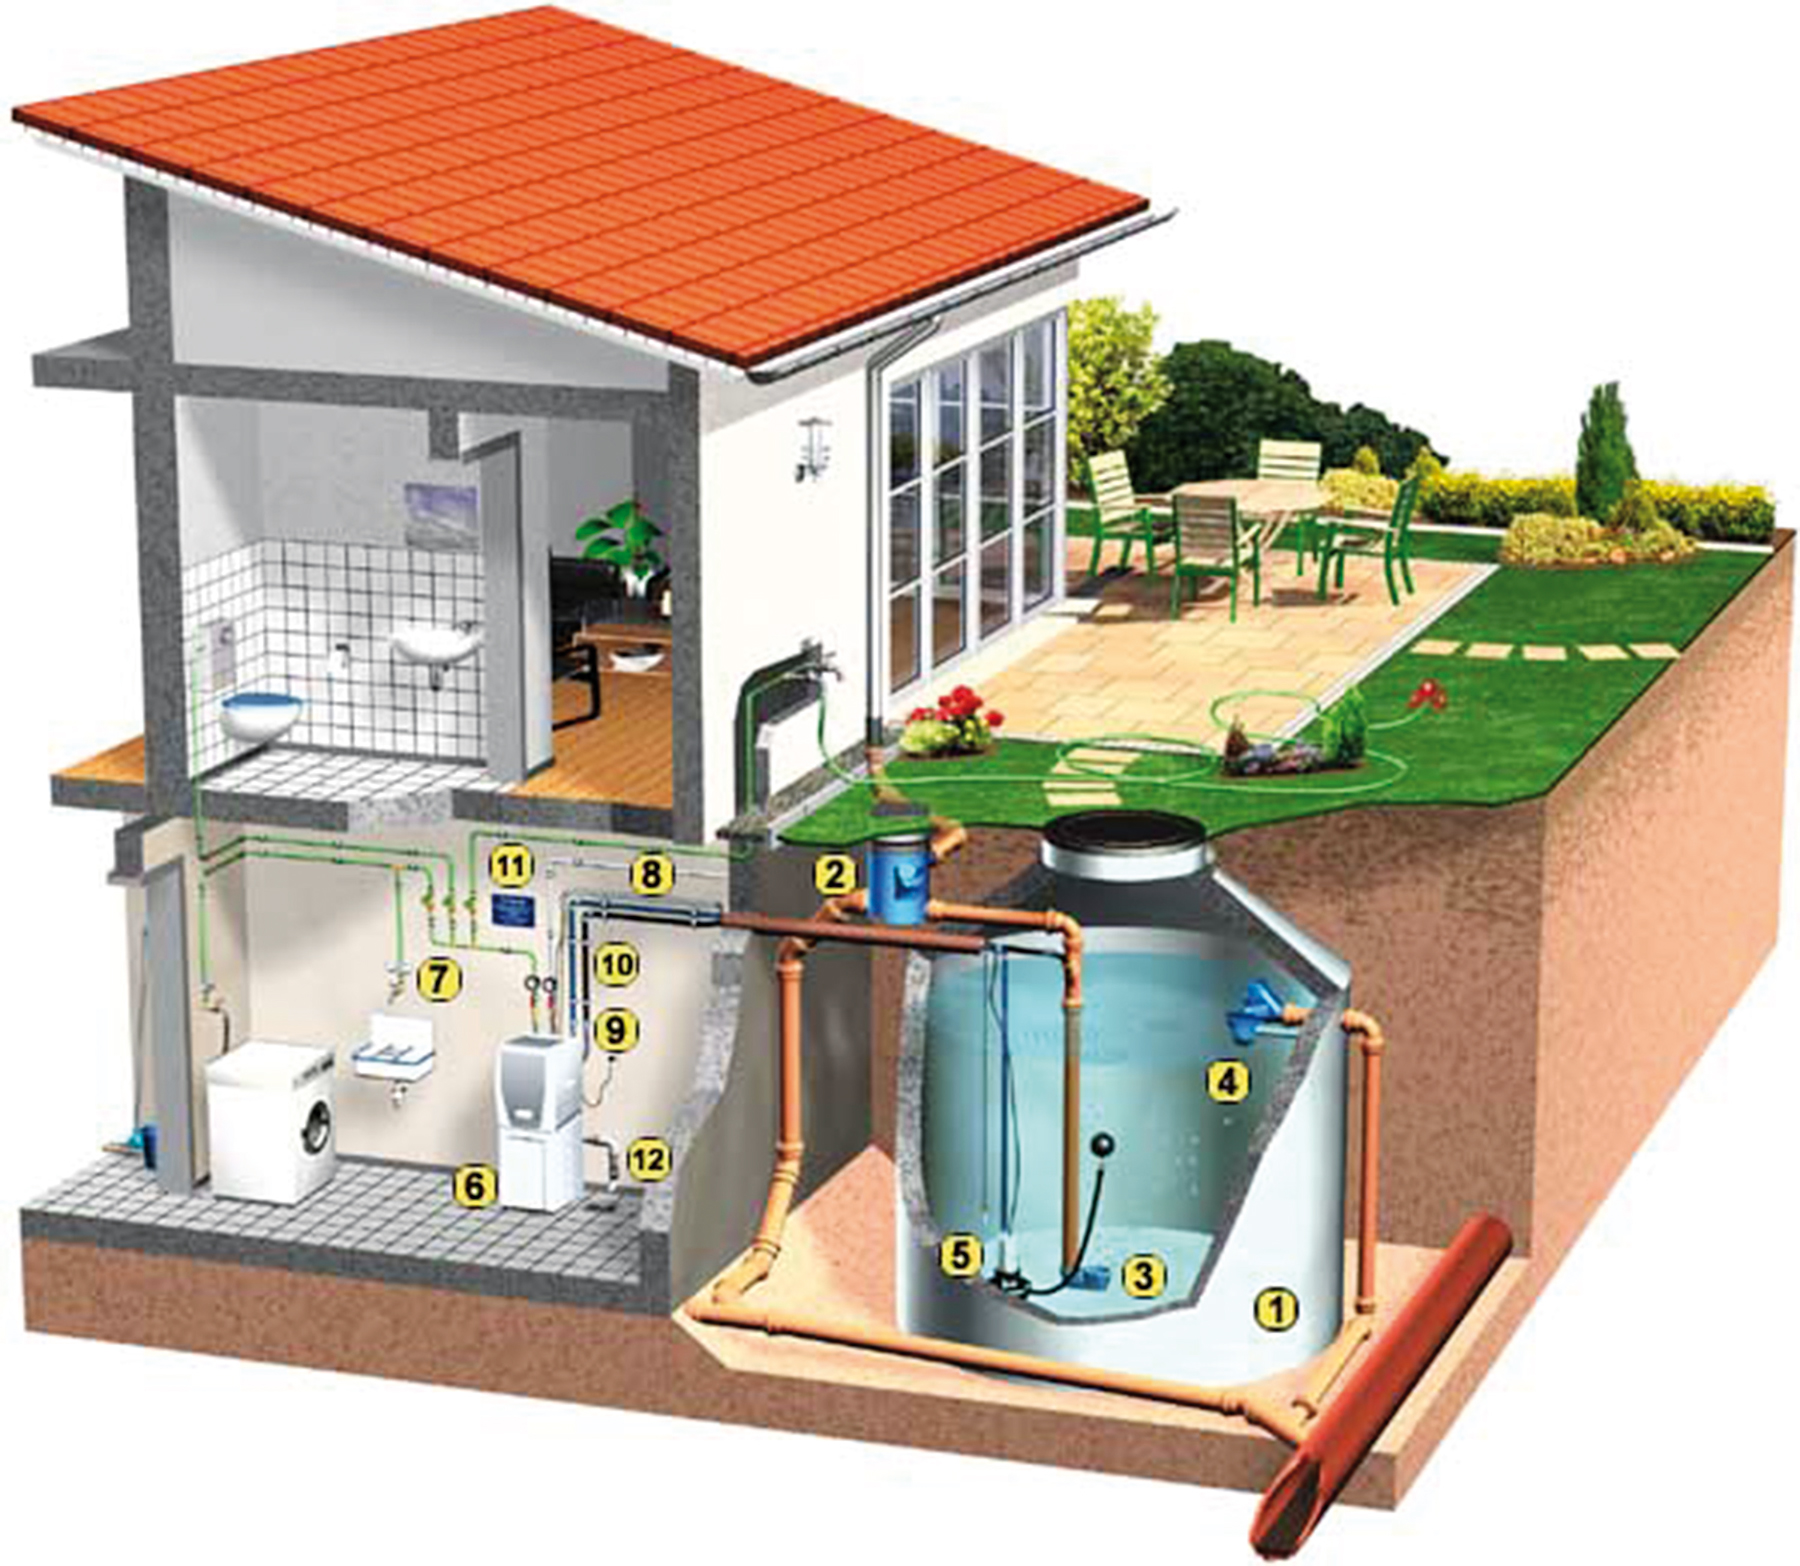 Obr. 2 Príklad technologického zariadenia na využitie zrážkovej vody v rodinnom dome 1 – zásobník zrážkovej vody, 2 – filter, 3 – tzv. ukľudňujúce prítokové potrubie zrážkovej vody, 4 – priepadové potrubie, 5 – ponorné čerpadlo s plavákovým spínačom, 6 – riadiaca jednotka, 7 – rozvodné potrubie prevádzkovej vody, 8 – elektrokábel pre senzor a čerpacie zariadenie, 9 – tlakové potrubie, 10 – dopĺňacie potrubie z čerpadla, 11 – dopĺňanie, prívod pitnej vody, 12 – priepad